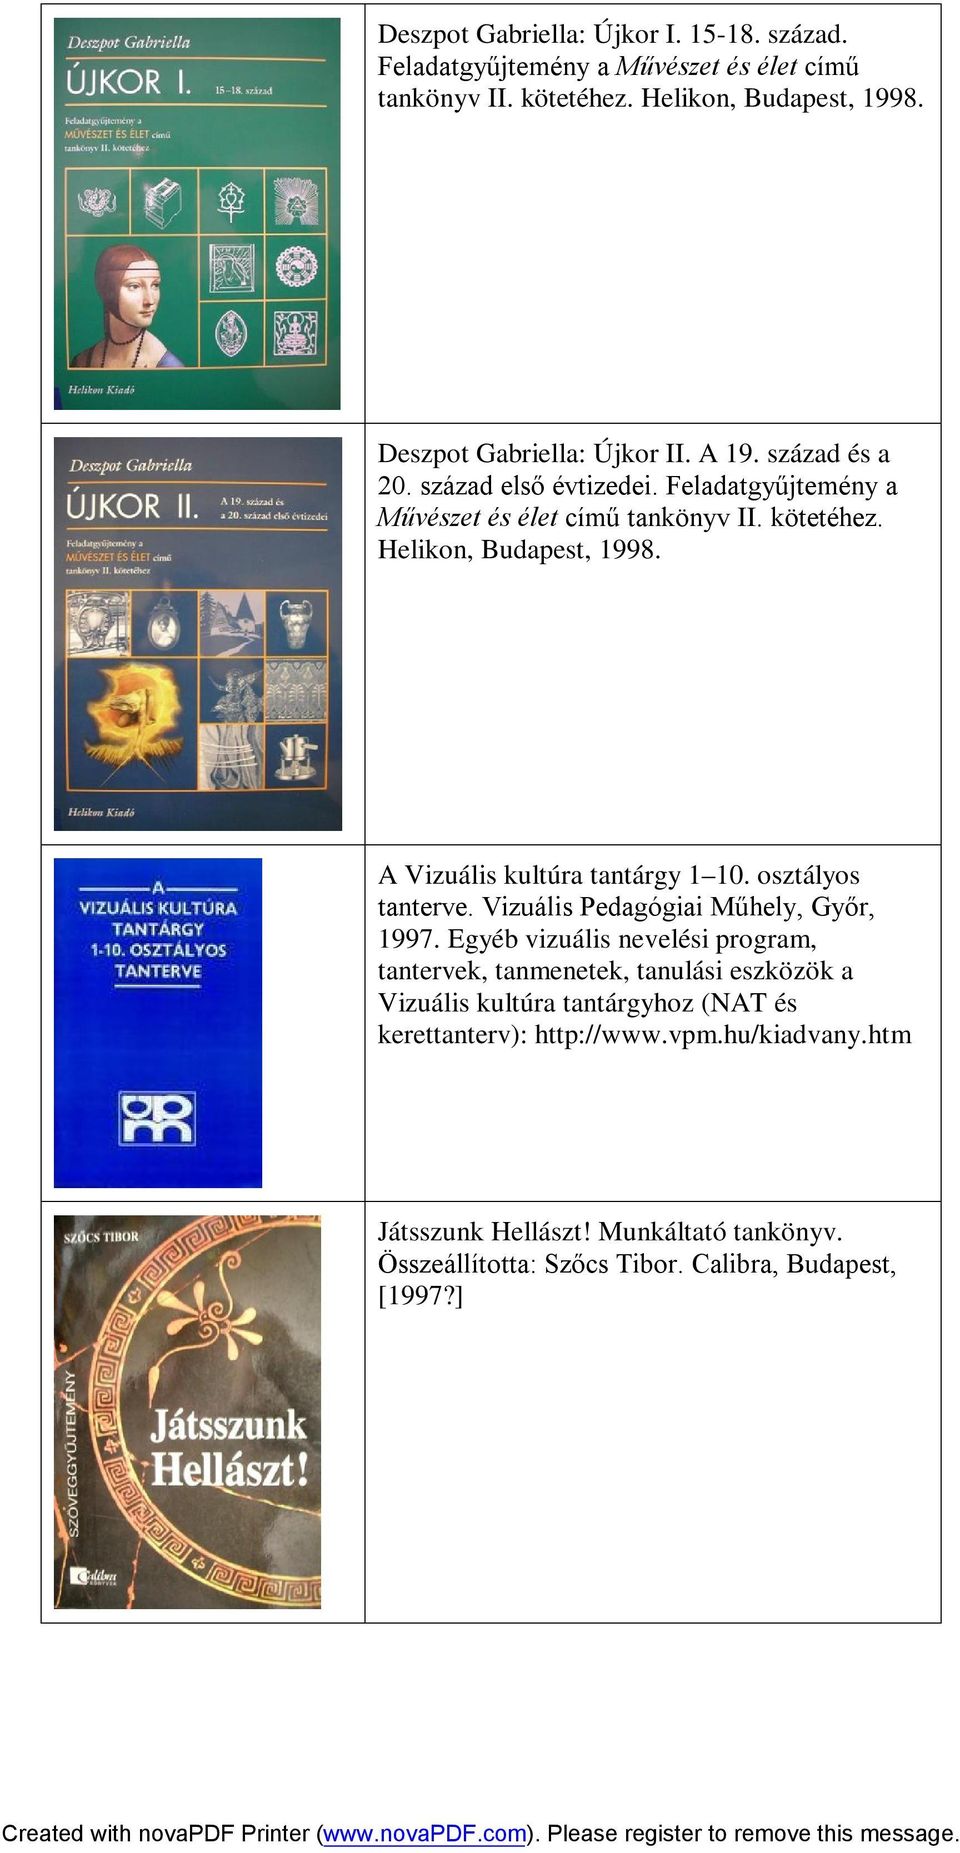 A Vizuális kultúra tantárgy 1 10. osztályos tanterve. Vizuális Pedagógiai Műhely, Győr, 1997.